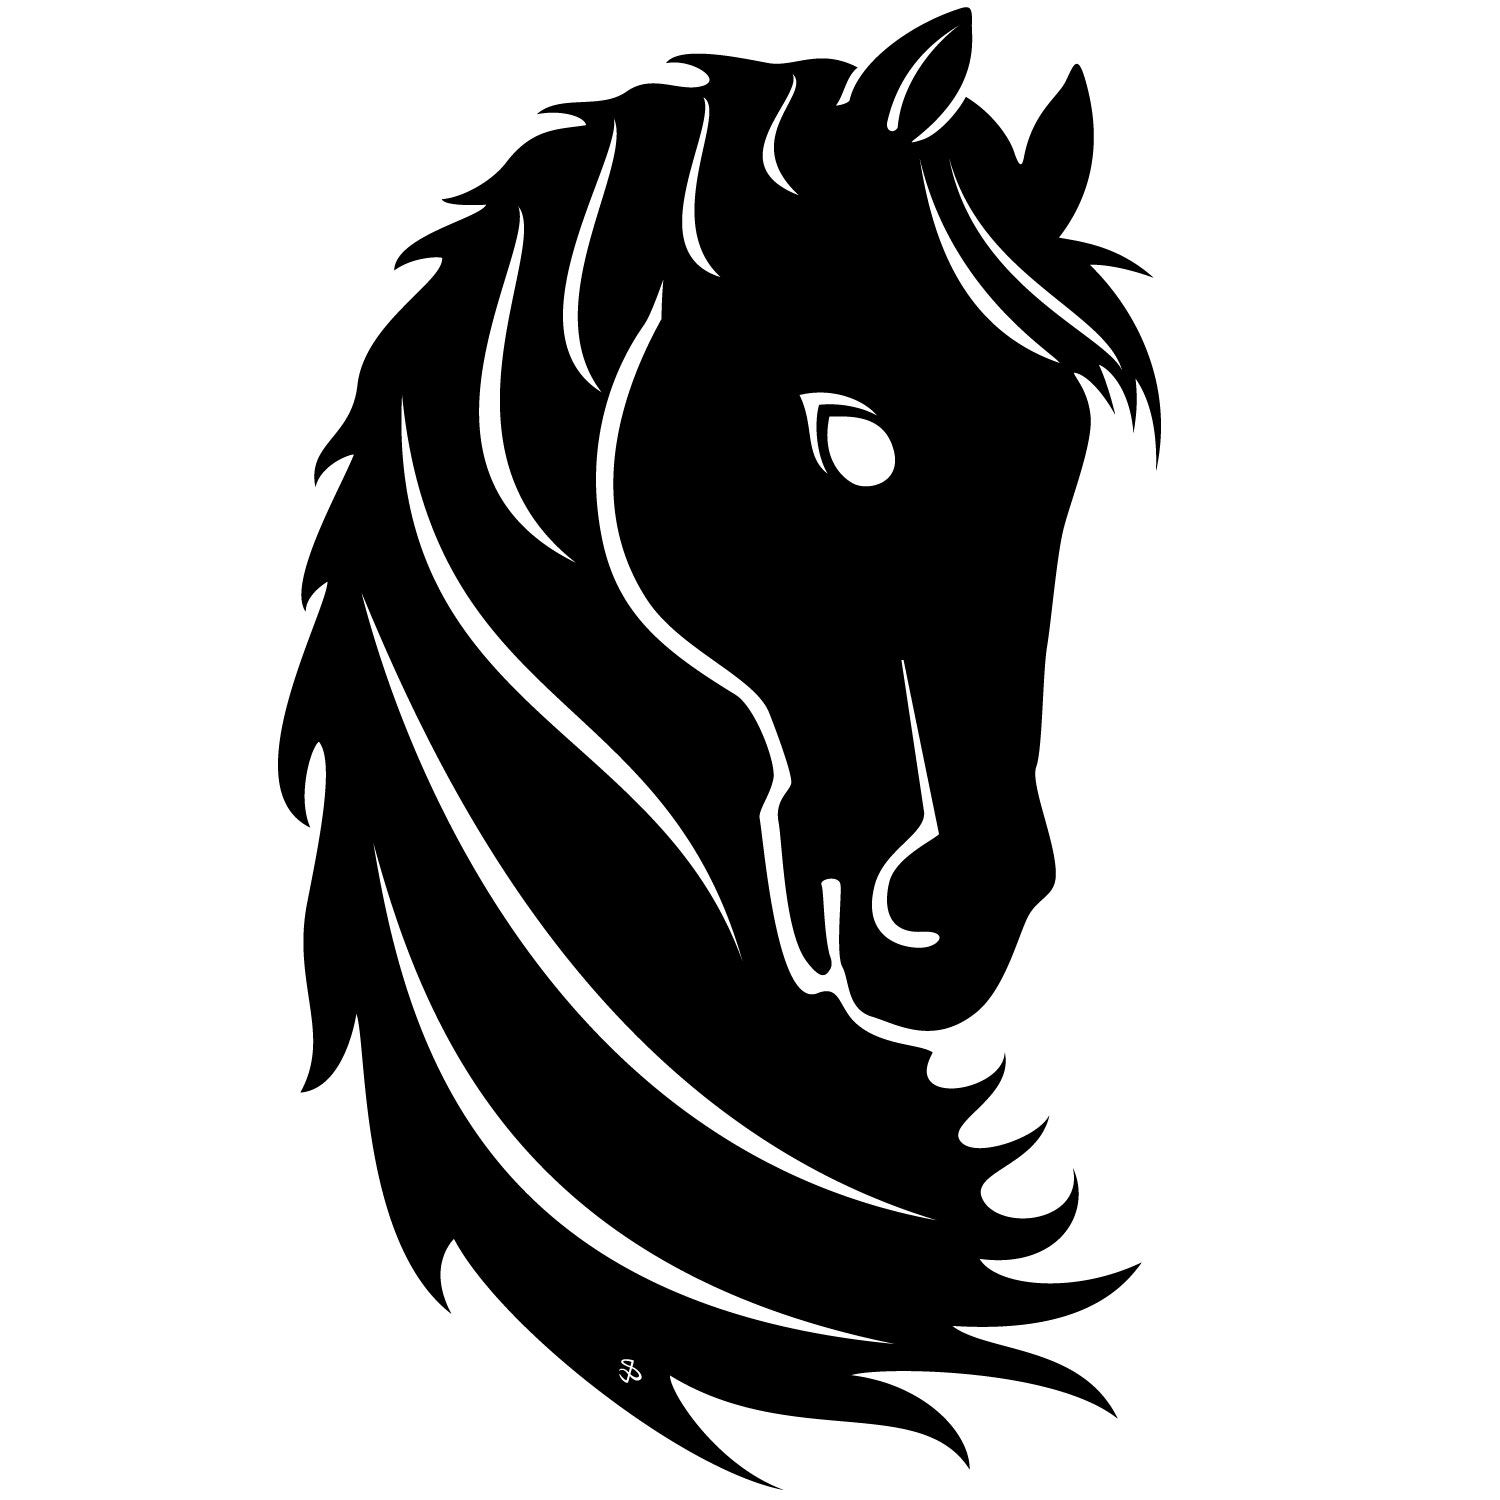 Horses Free Vectors | Free vector images, graphics and art - CC 